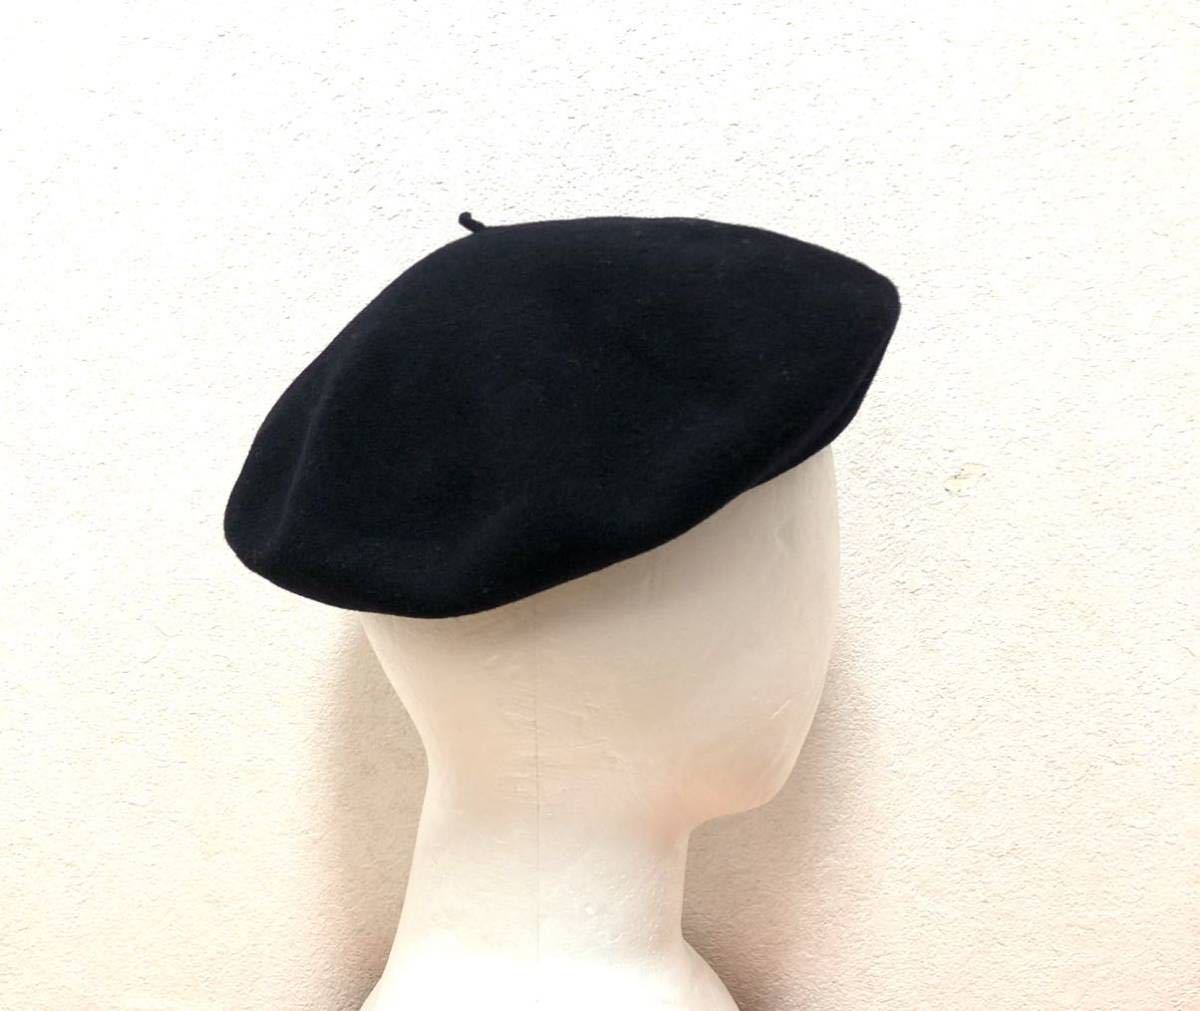 Galeries Lafayette Paris ベレー帽 VERITABLE BASQUE IROULEGUY フランス製 帽子 ブラック パリ_画像1